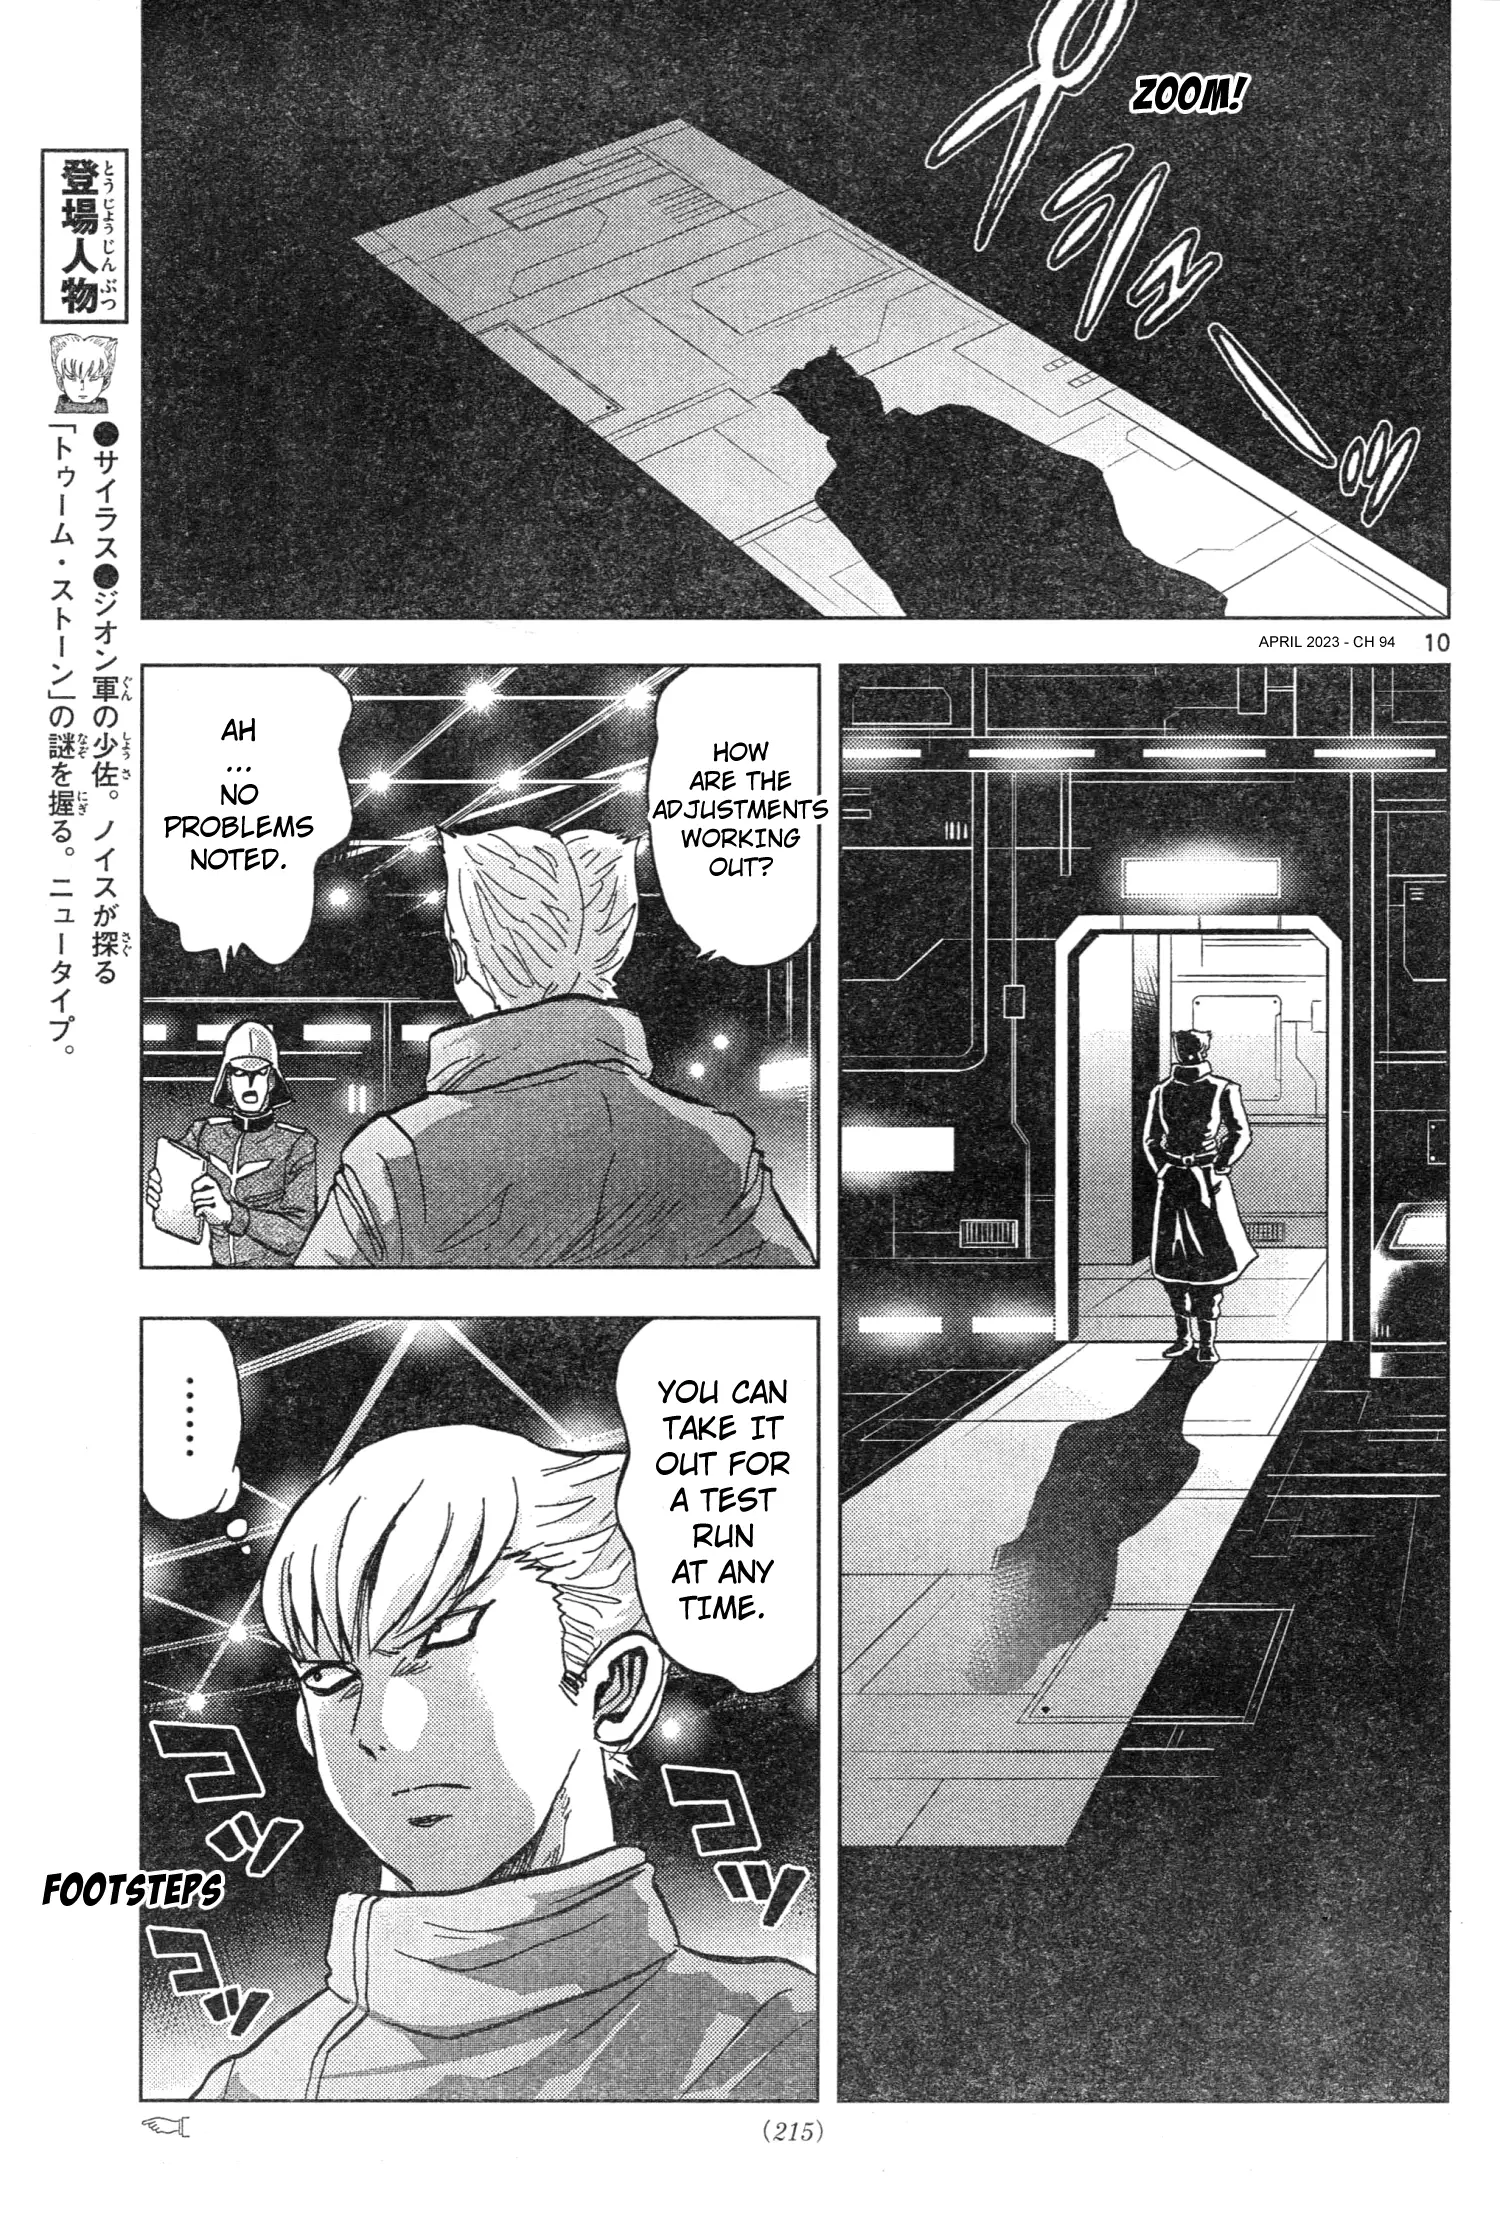 Mobile Suit Gundam Aggressor - 94 page 10-0a1d4652